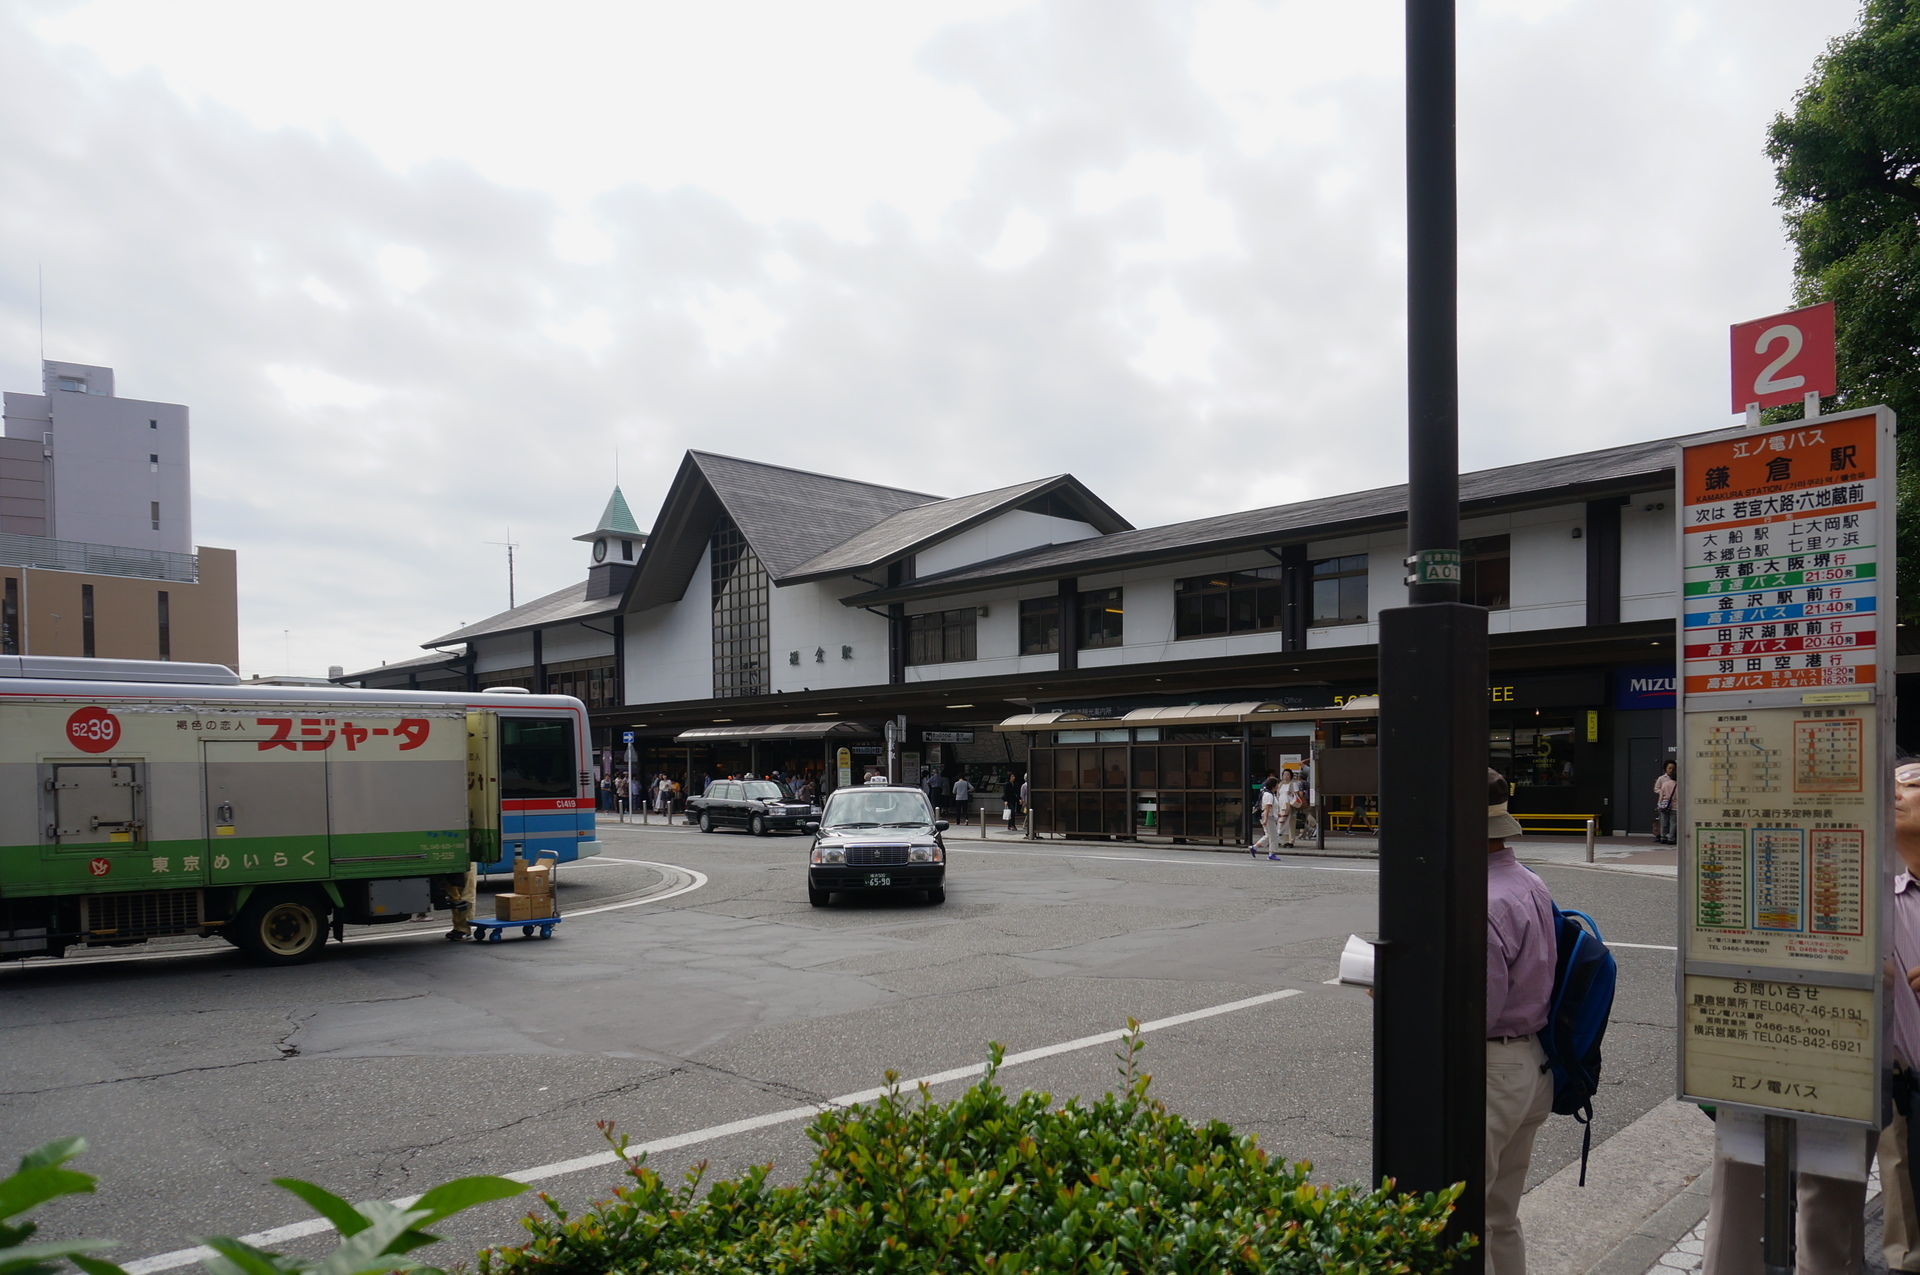 鎌倉から江ノ島まで江ノ電に乗った 鎌倉 から 長谷駅 Ogu S Blog かずさ便り ちょっとだけpcの話も